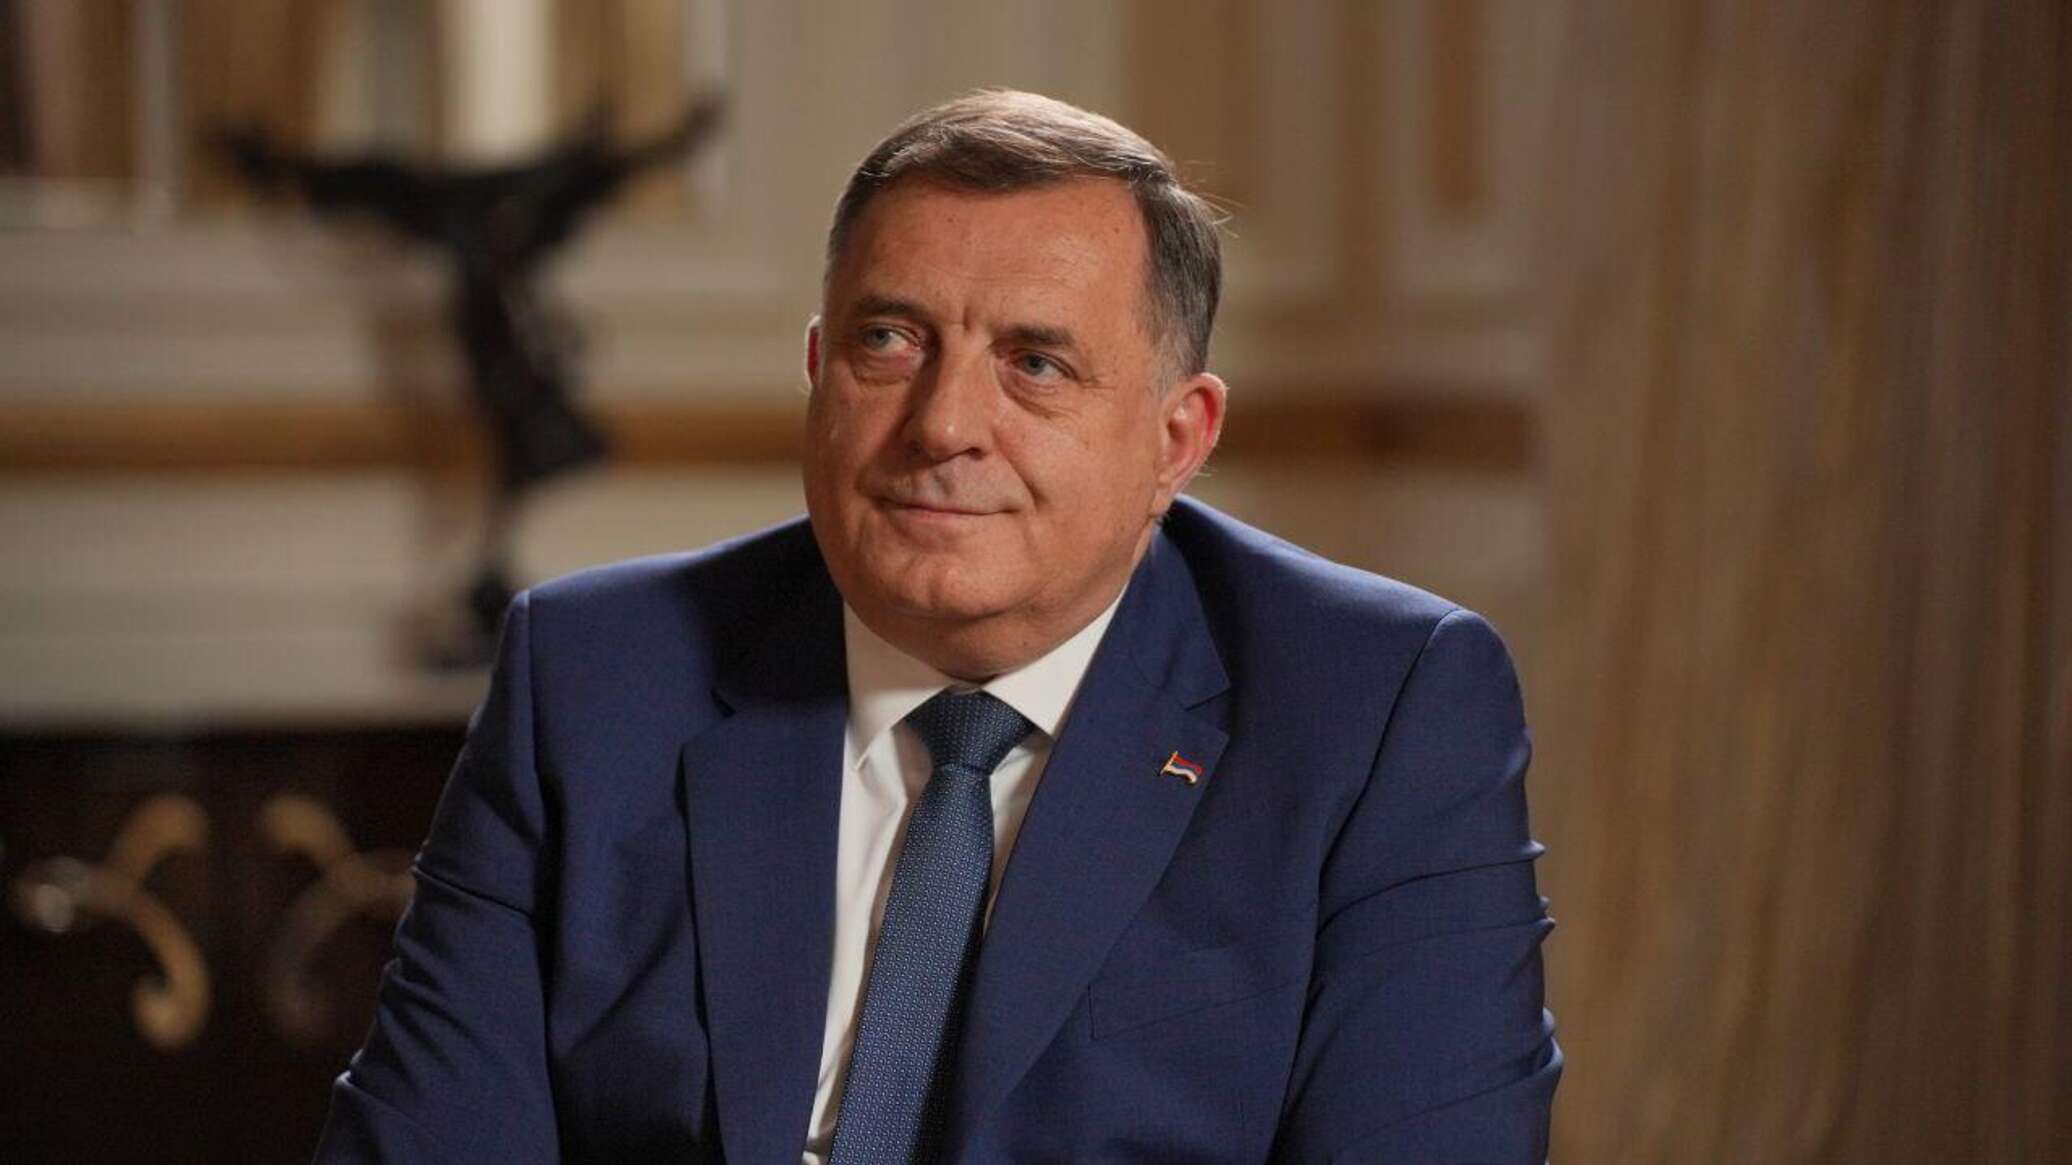 رئيس صرب البوسنة: الغرب يضغط علينا يوميا حتى نفرض عقوبات على روسيا